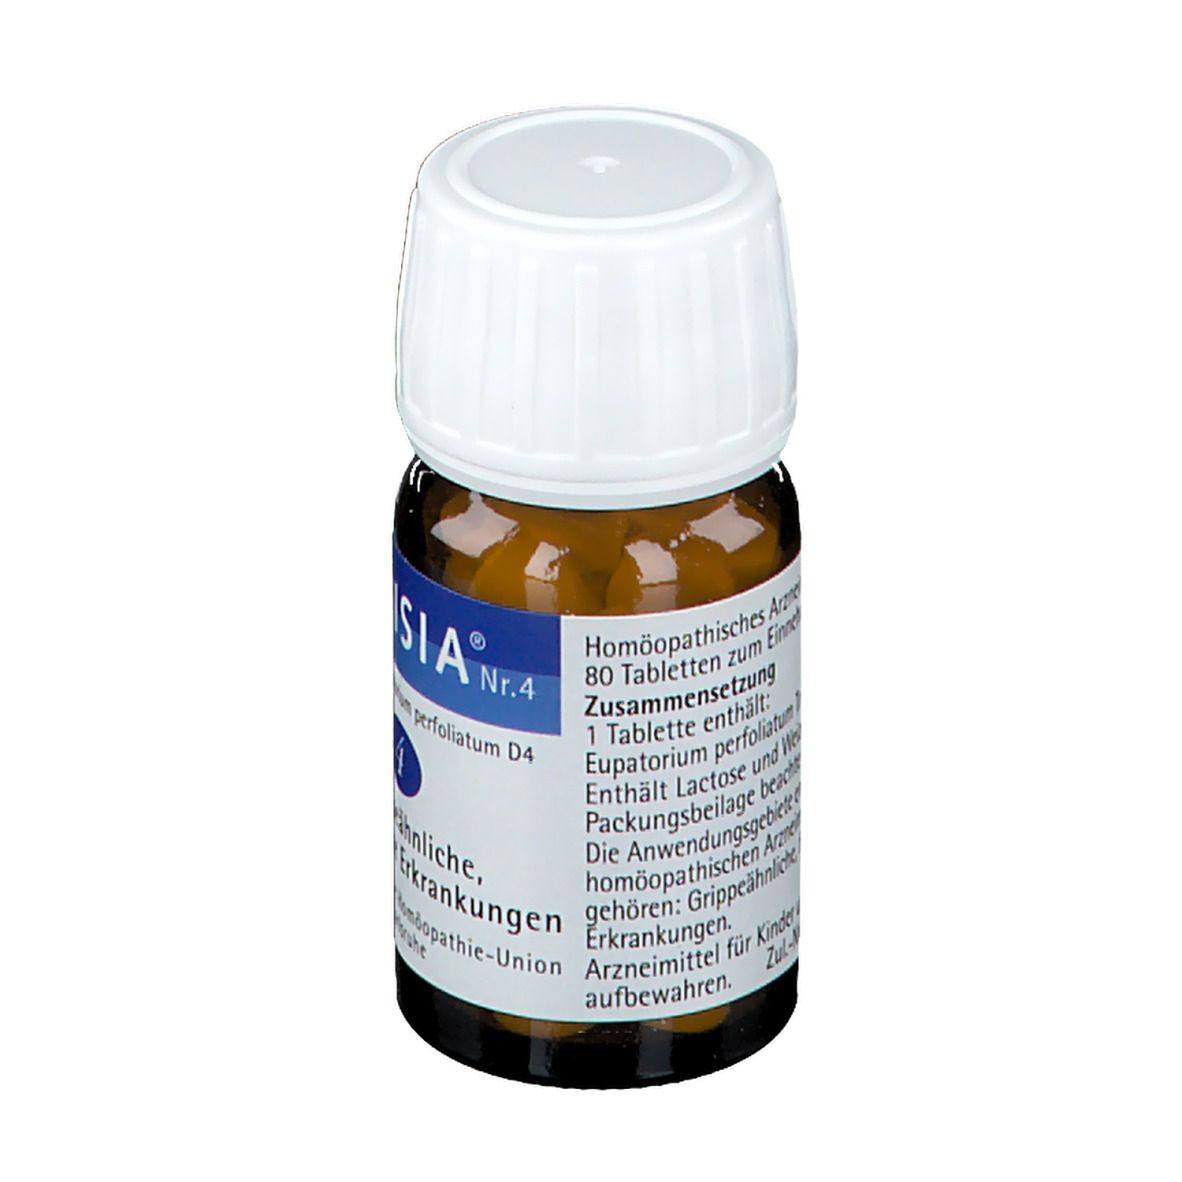 Denisia® Nr.4 bei Grippeähnliche Krankheiten